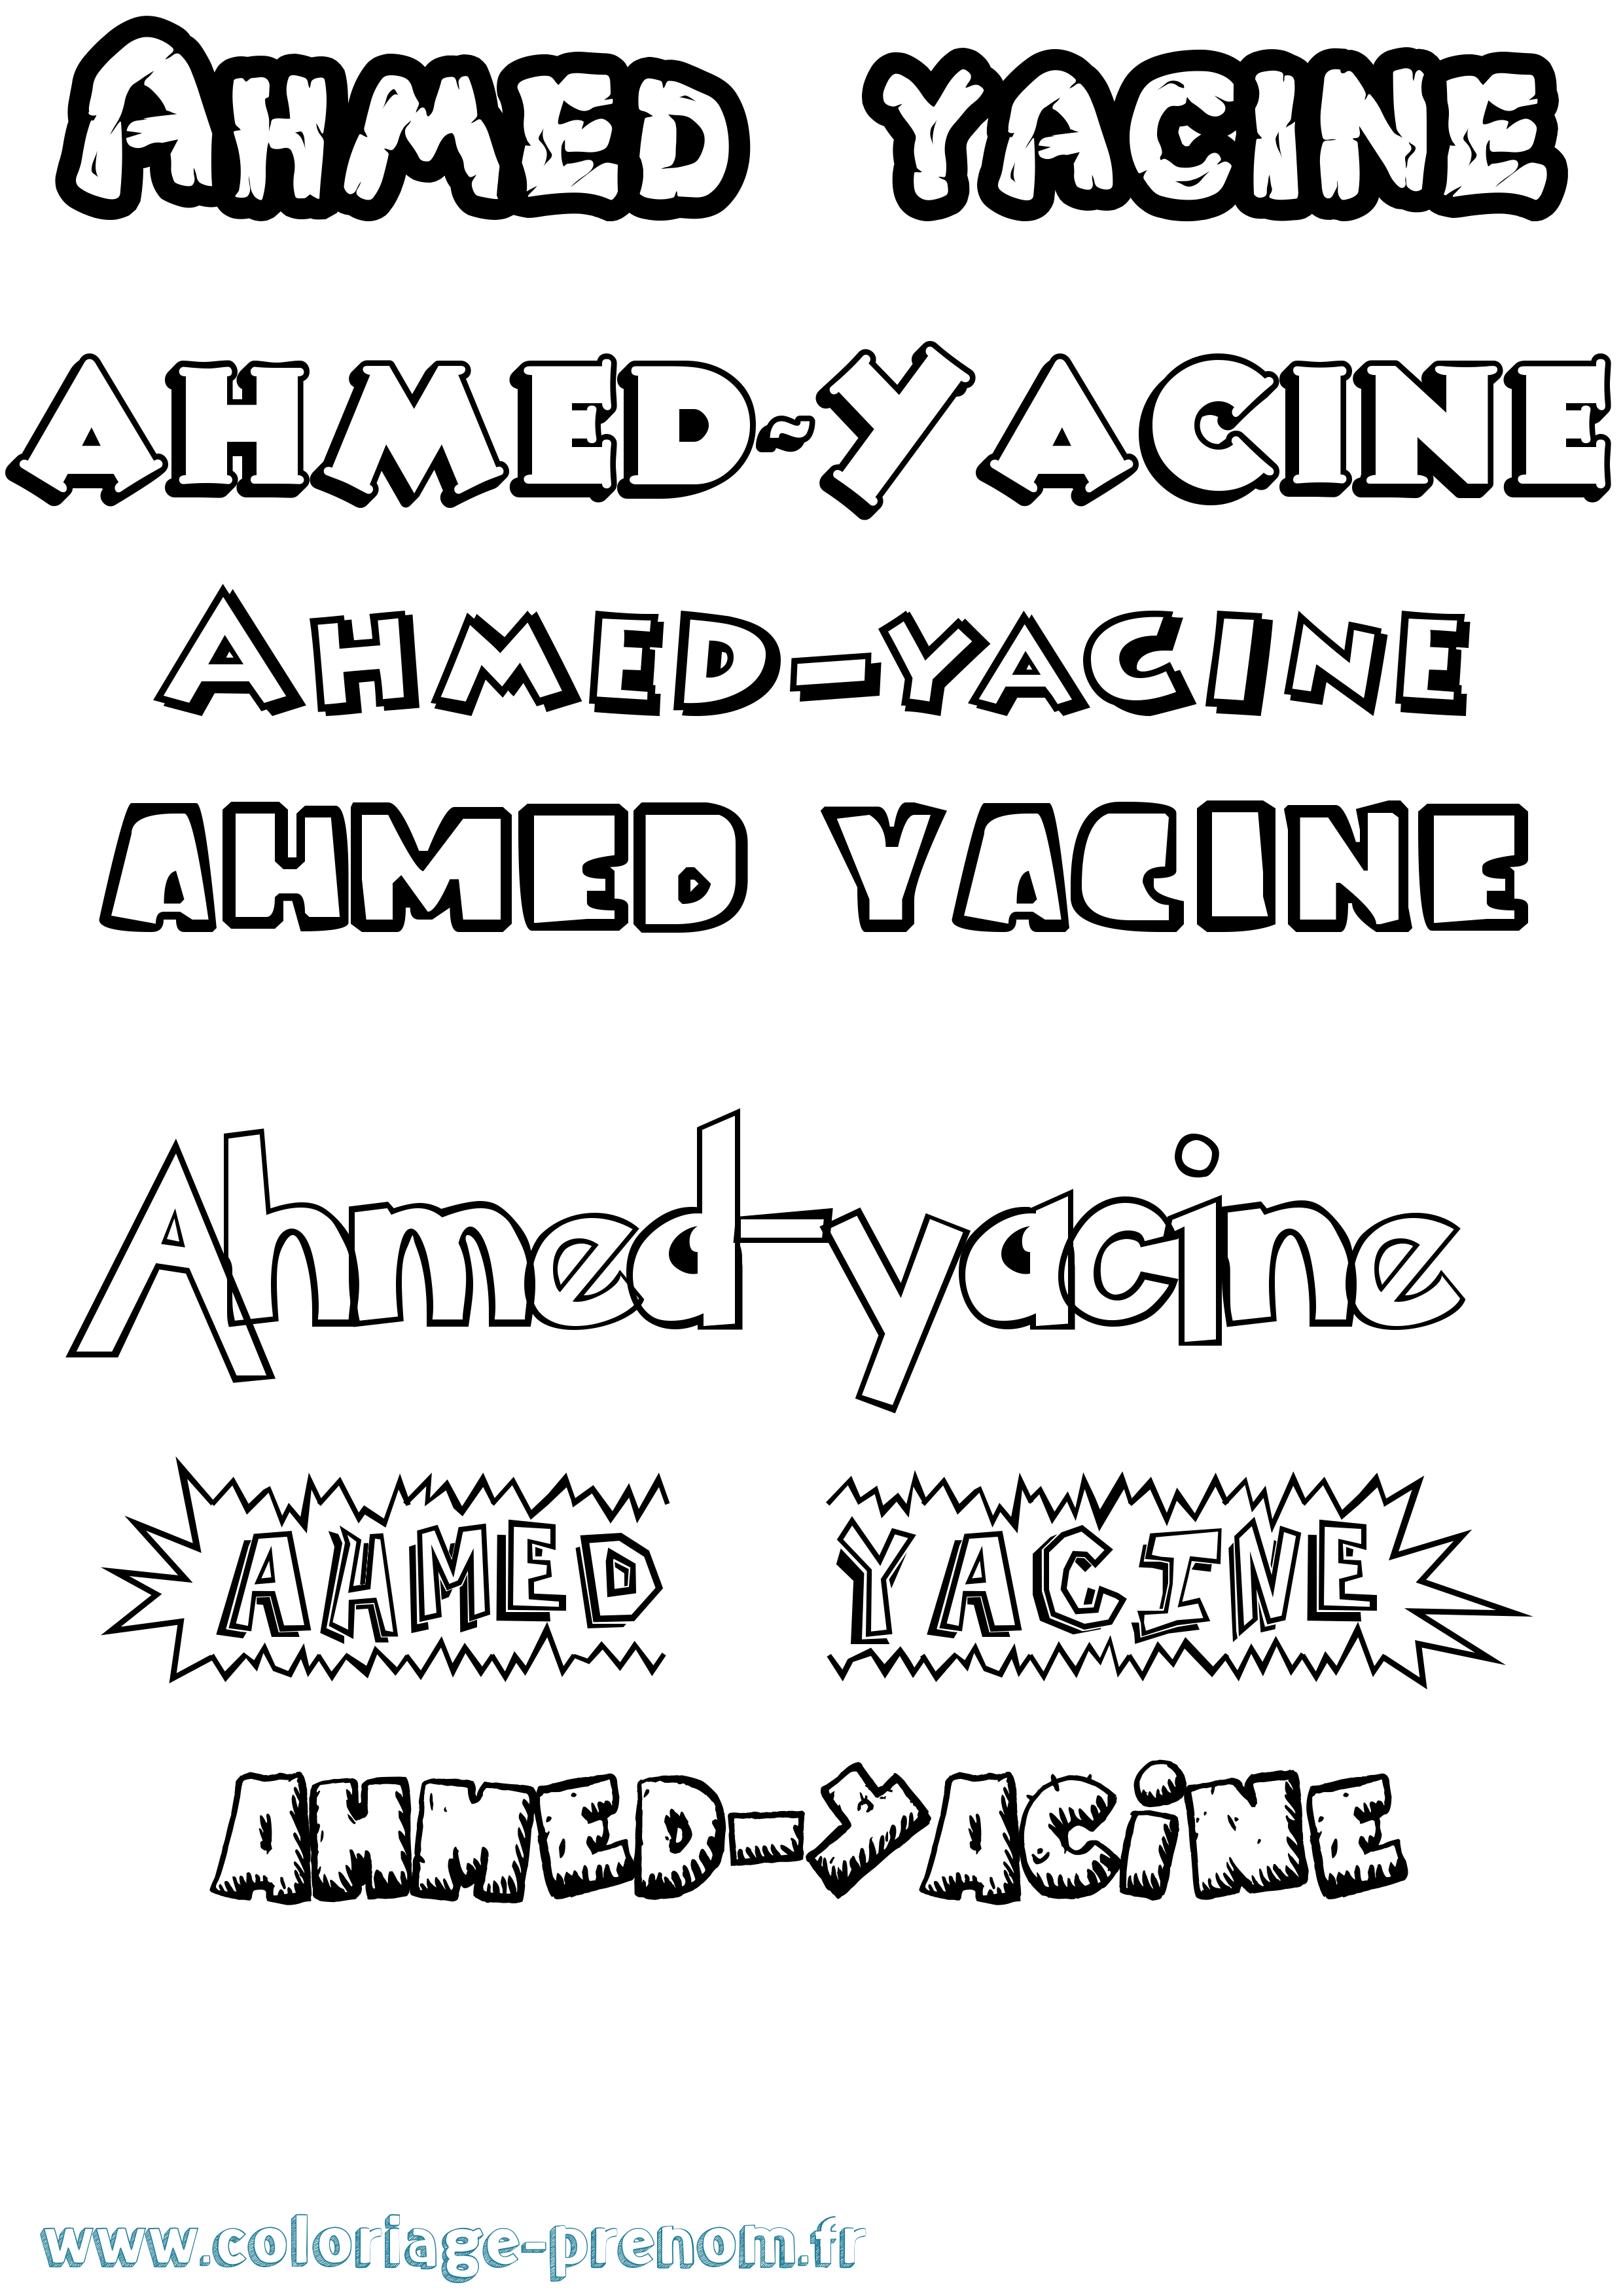 Coloriage prénom Ahmed-Yacine Dessin Animé